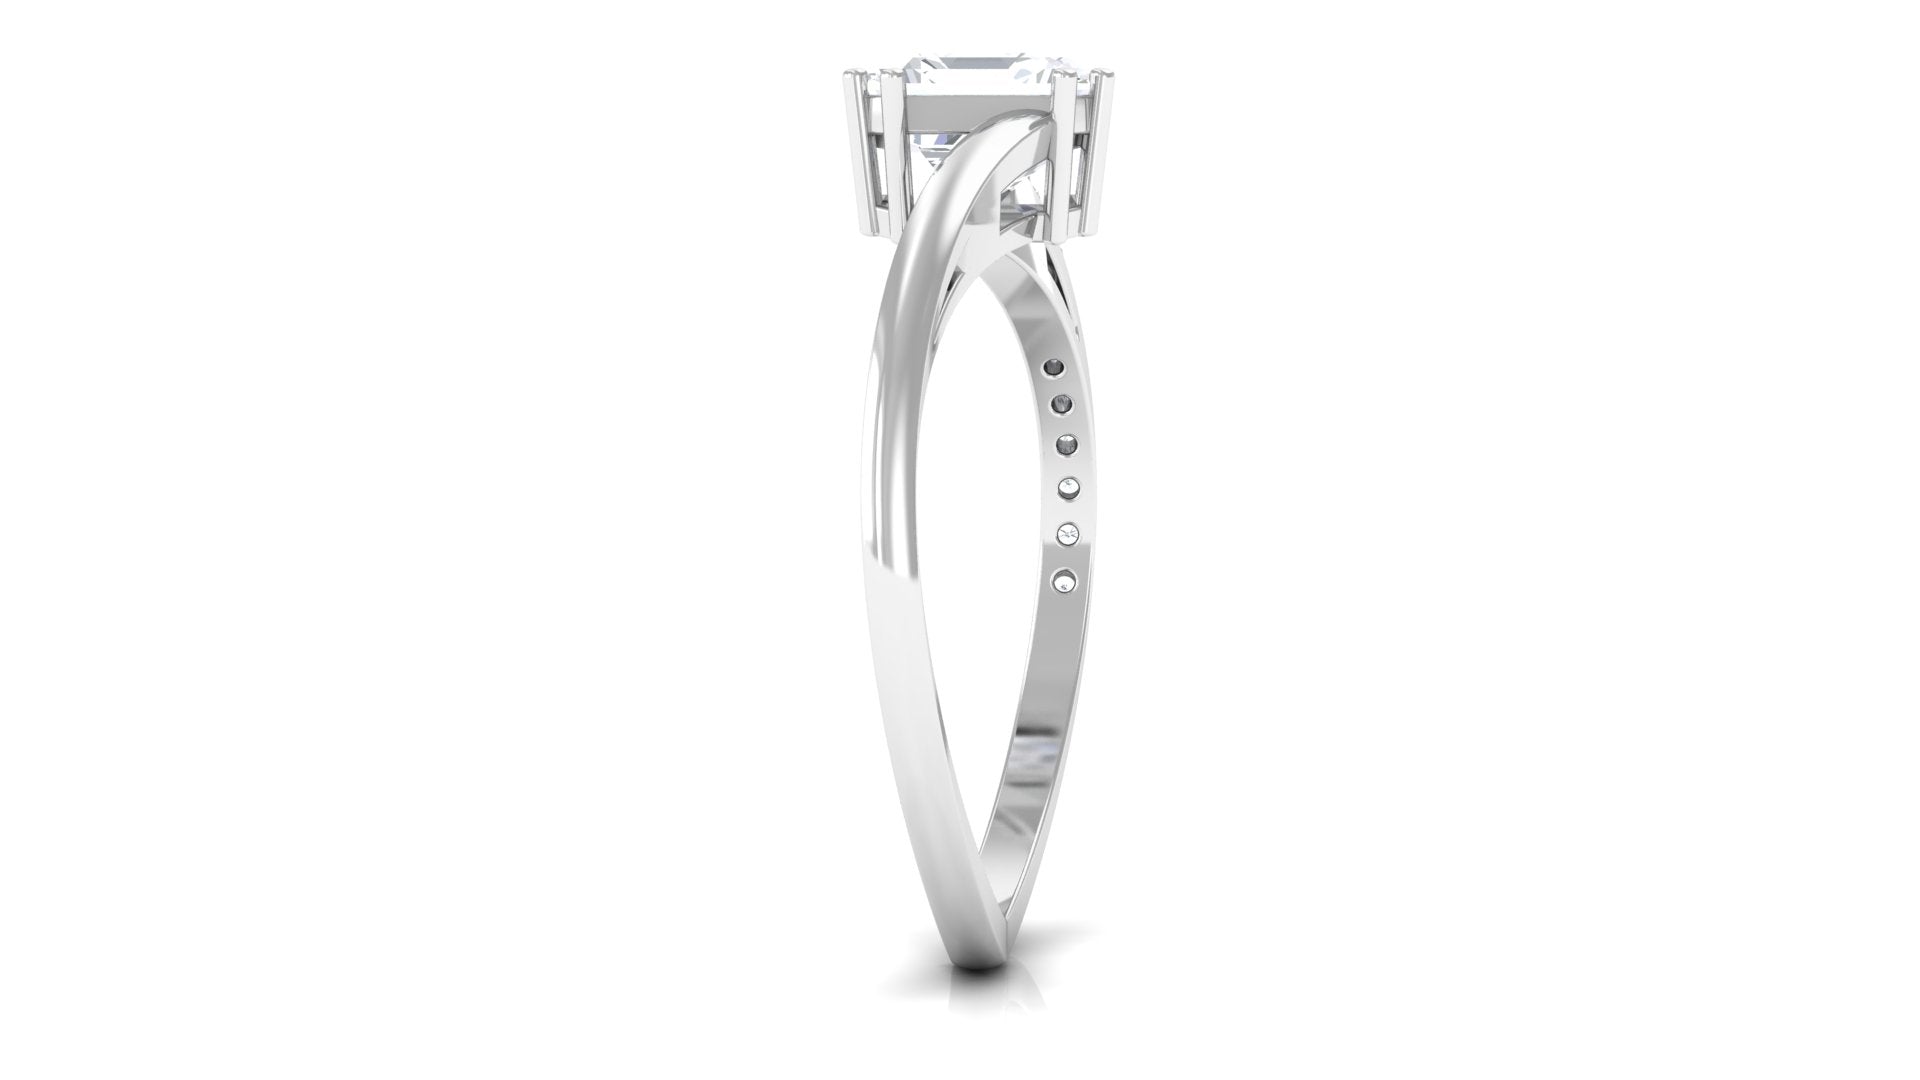 1.75 CT Asscher Cut Solitaire Zircon Bypass Engagement Ring Zircon - ( AAAA ) - Quality - Rosec Jewels